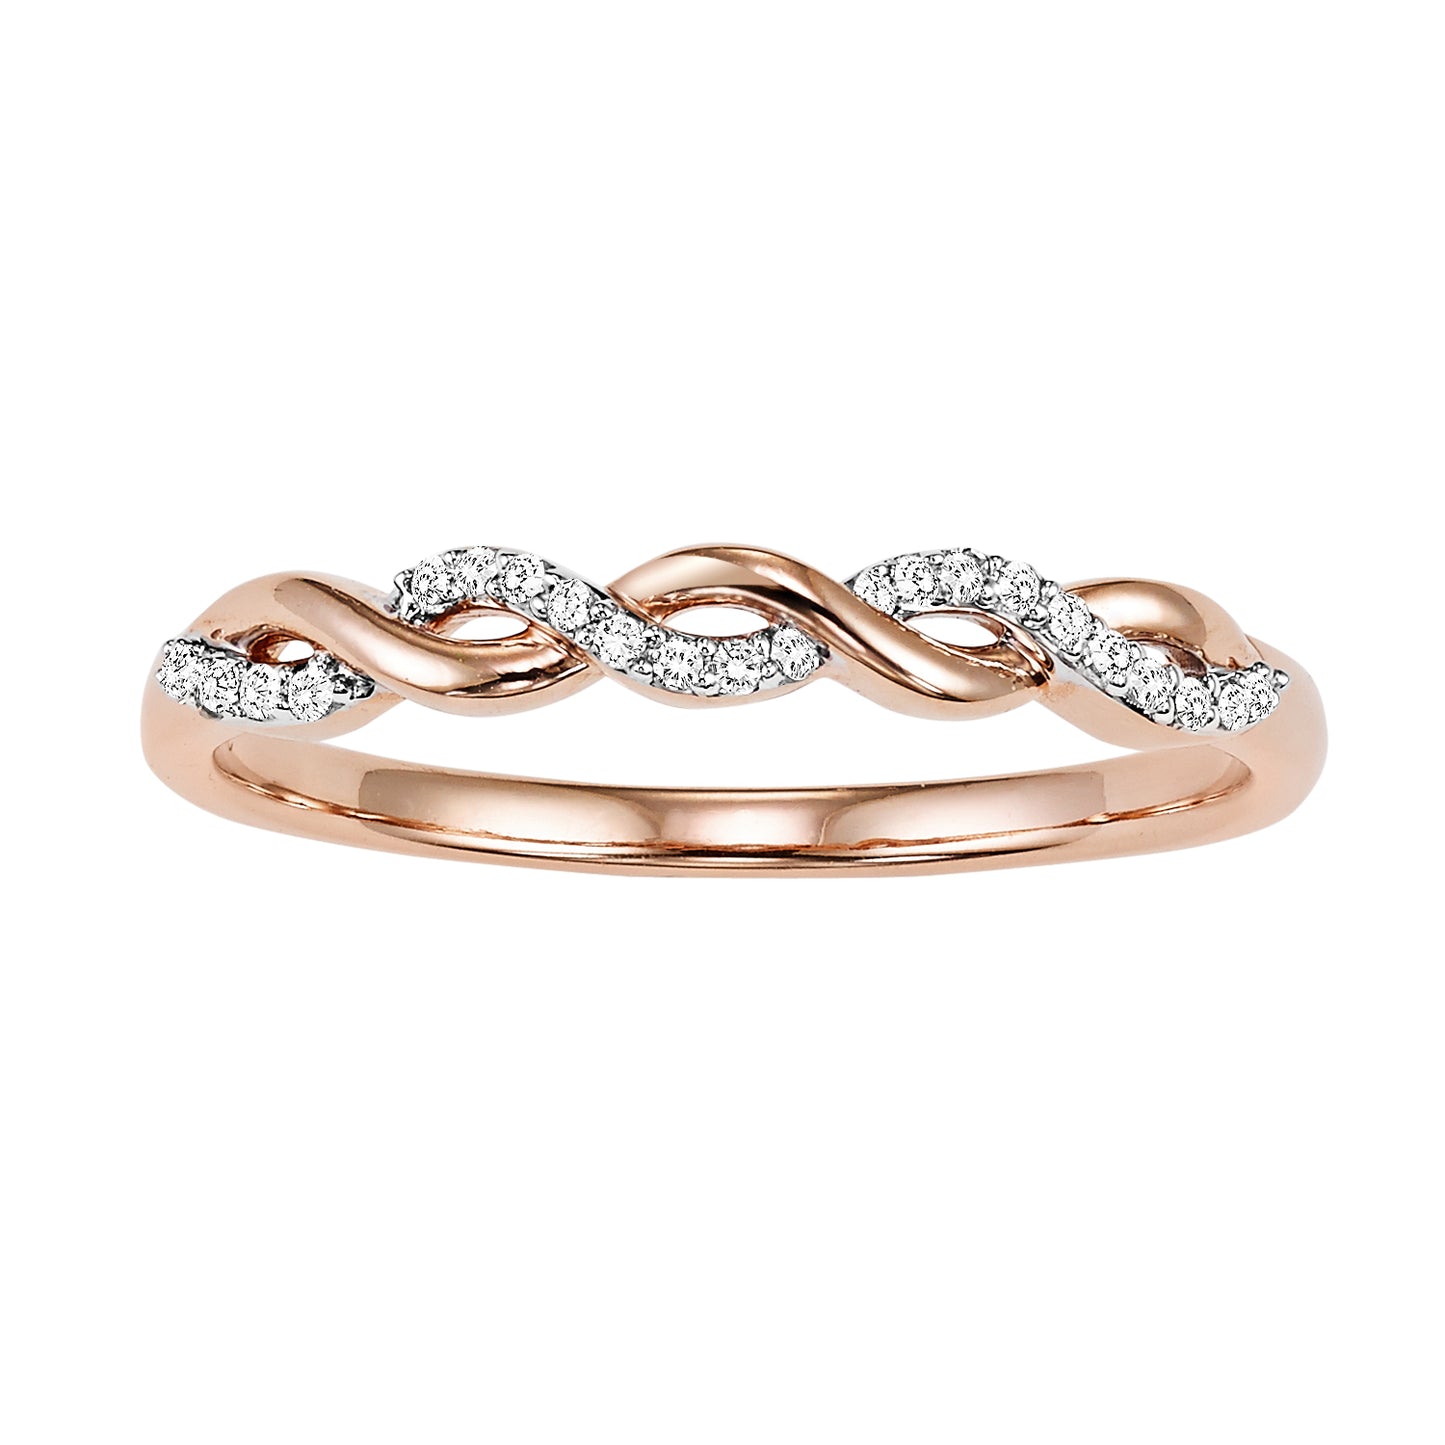 14K Rose Gold Interlocking Diamond Ring - 1/20 ct.